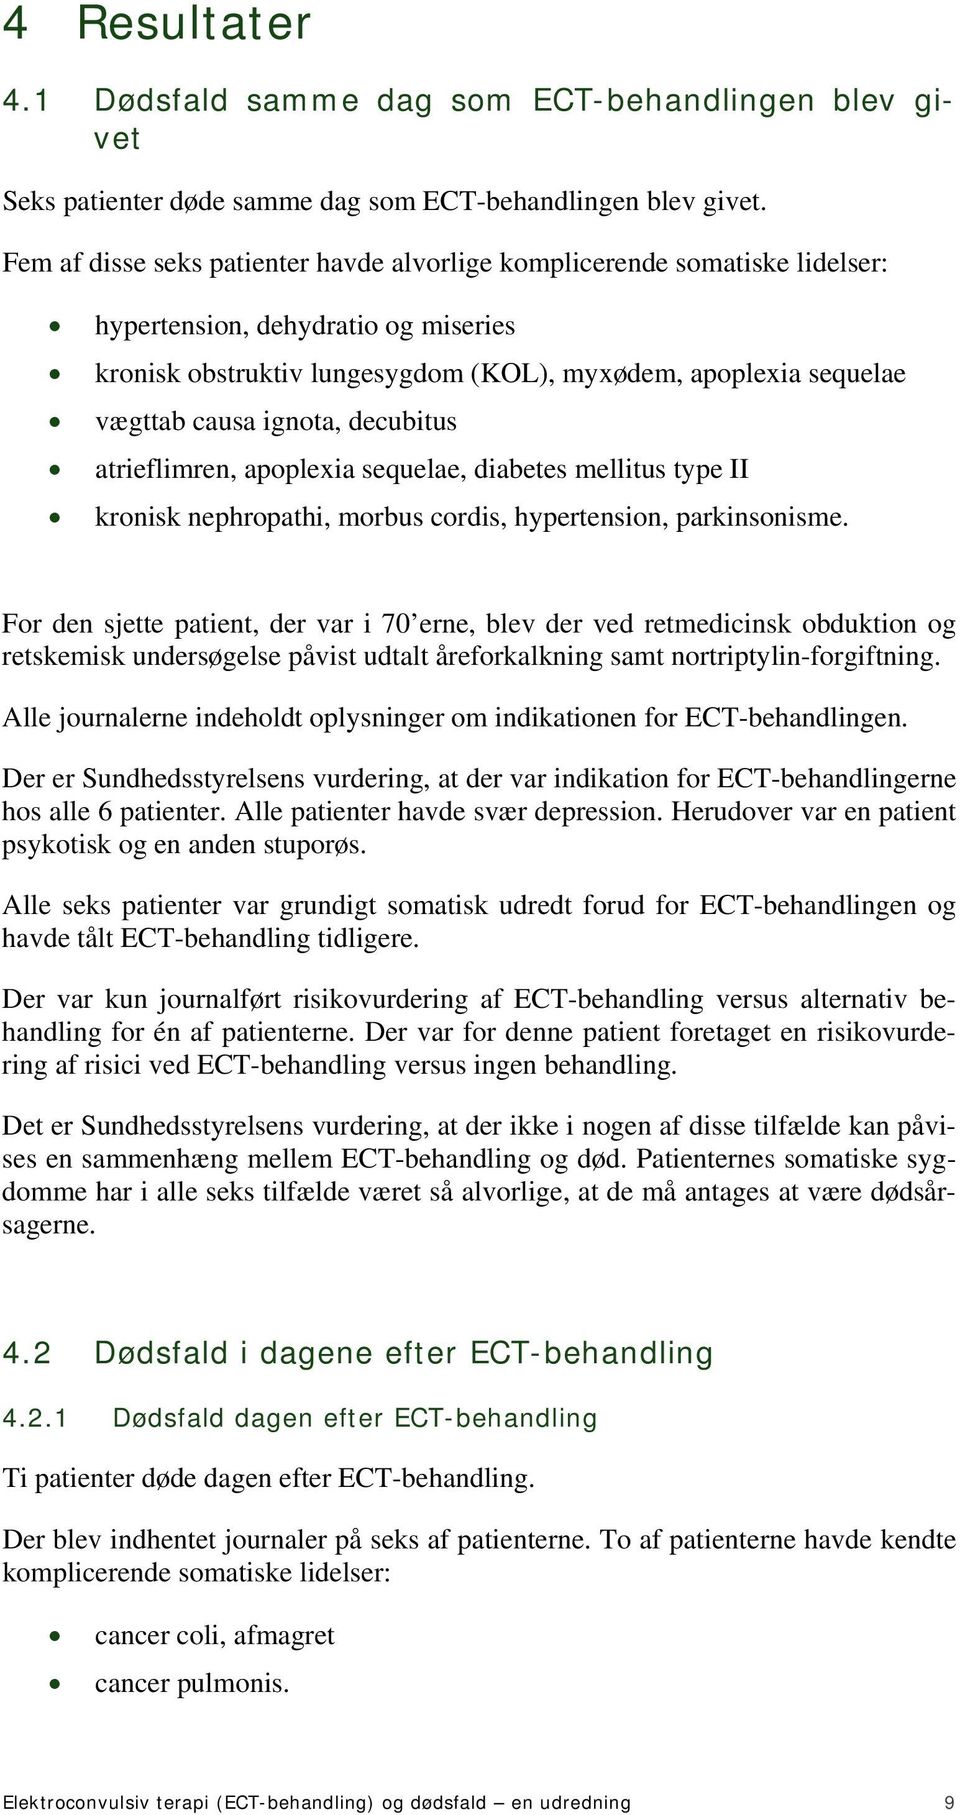 ELEKTROCONVULSIV TERAPI (ECT-BEHANDLING) OG DØDSFALD - en udredning - PDF  Gratis download